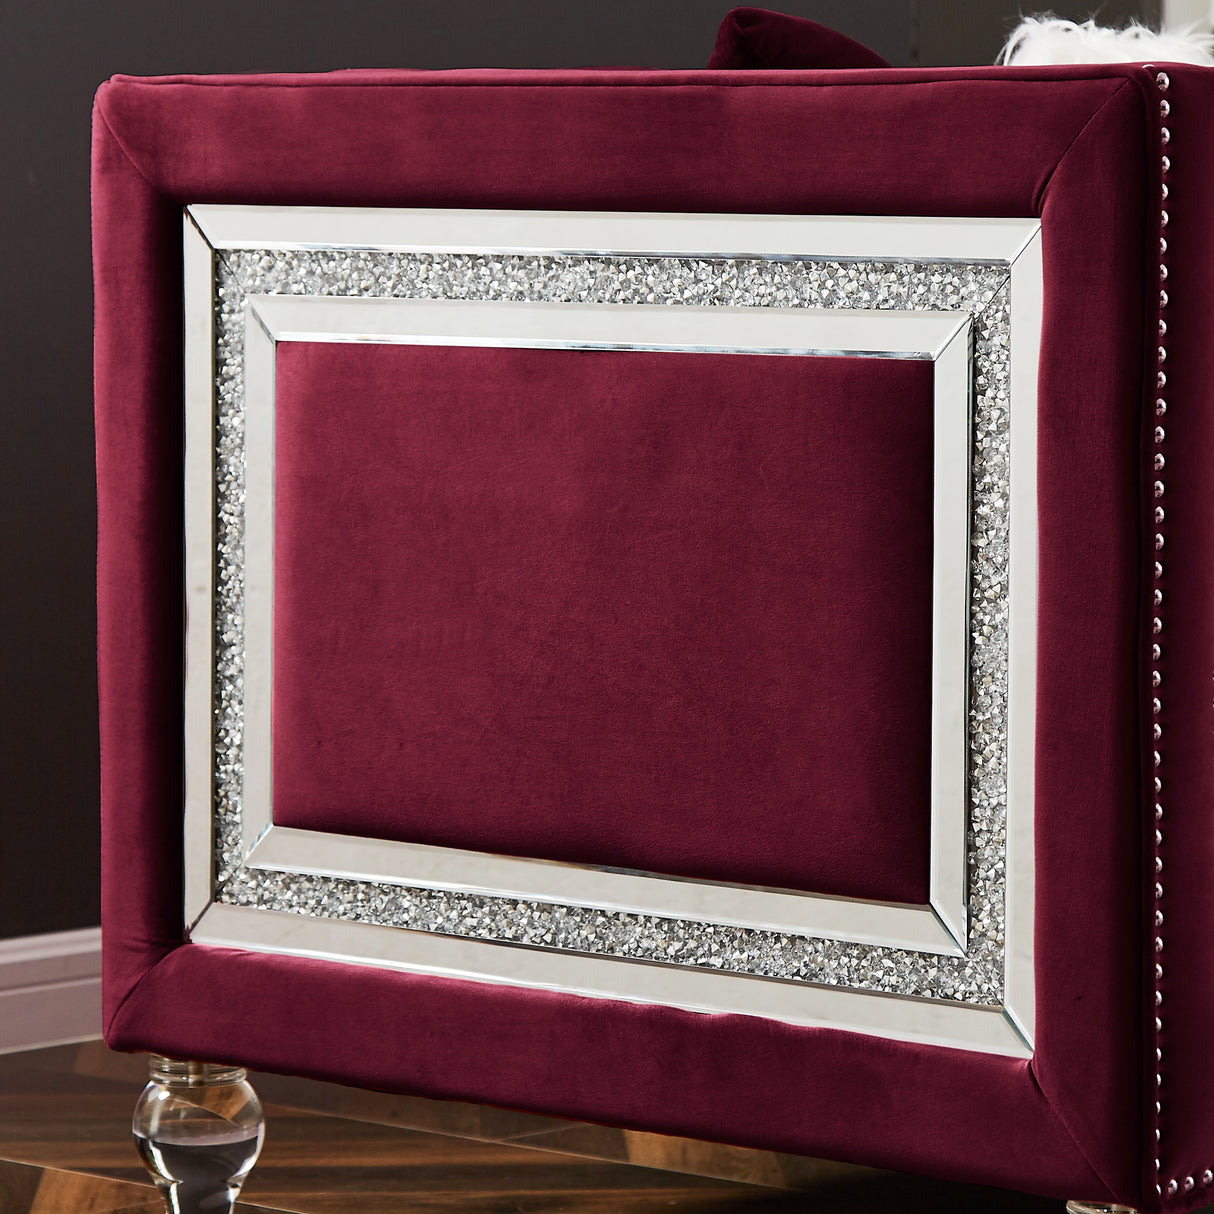 Single red velvet sofa Home Elegance USA